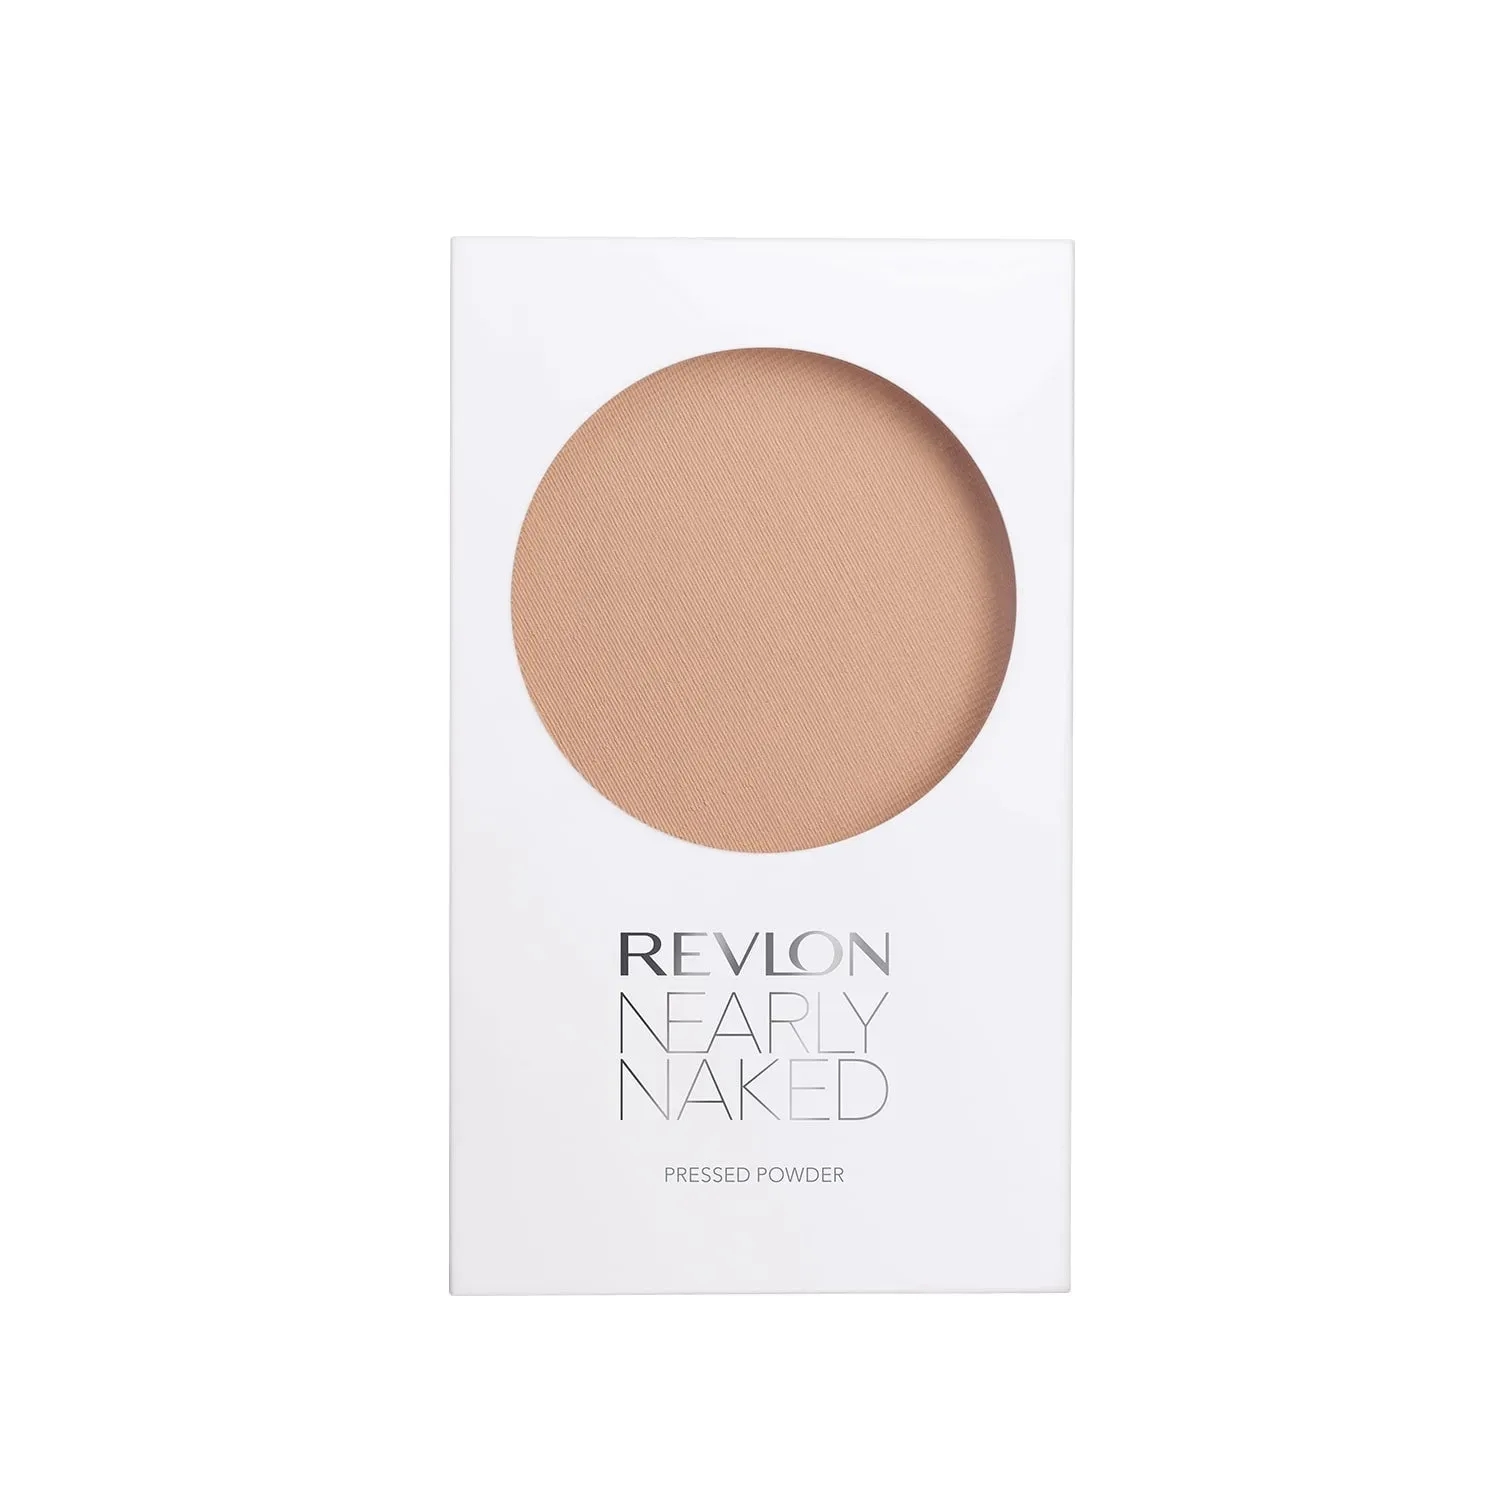 Revlon | Revlon Nearly Naked Pressed Powder - Medium (8g)